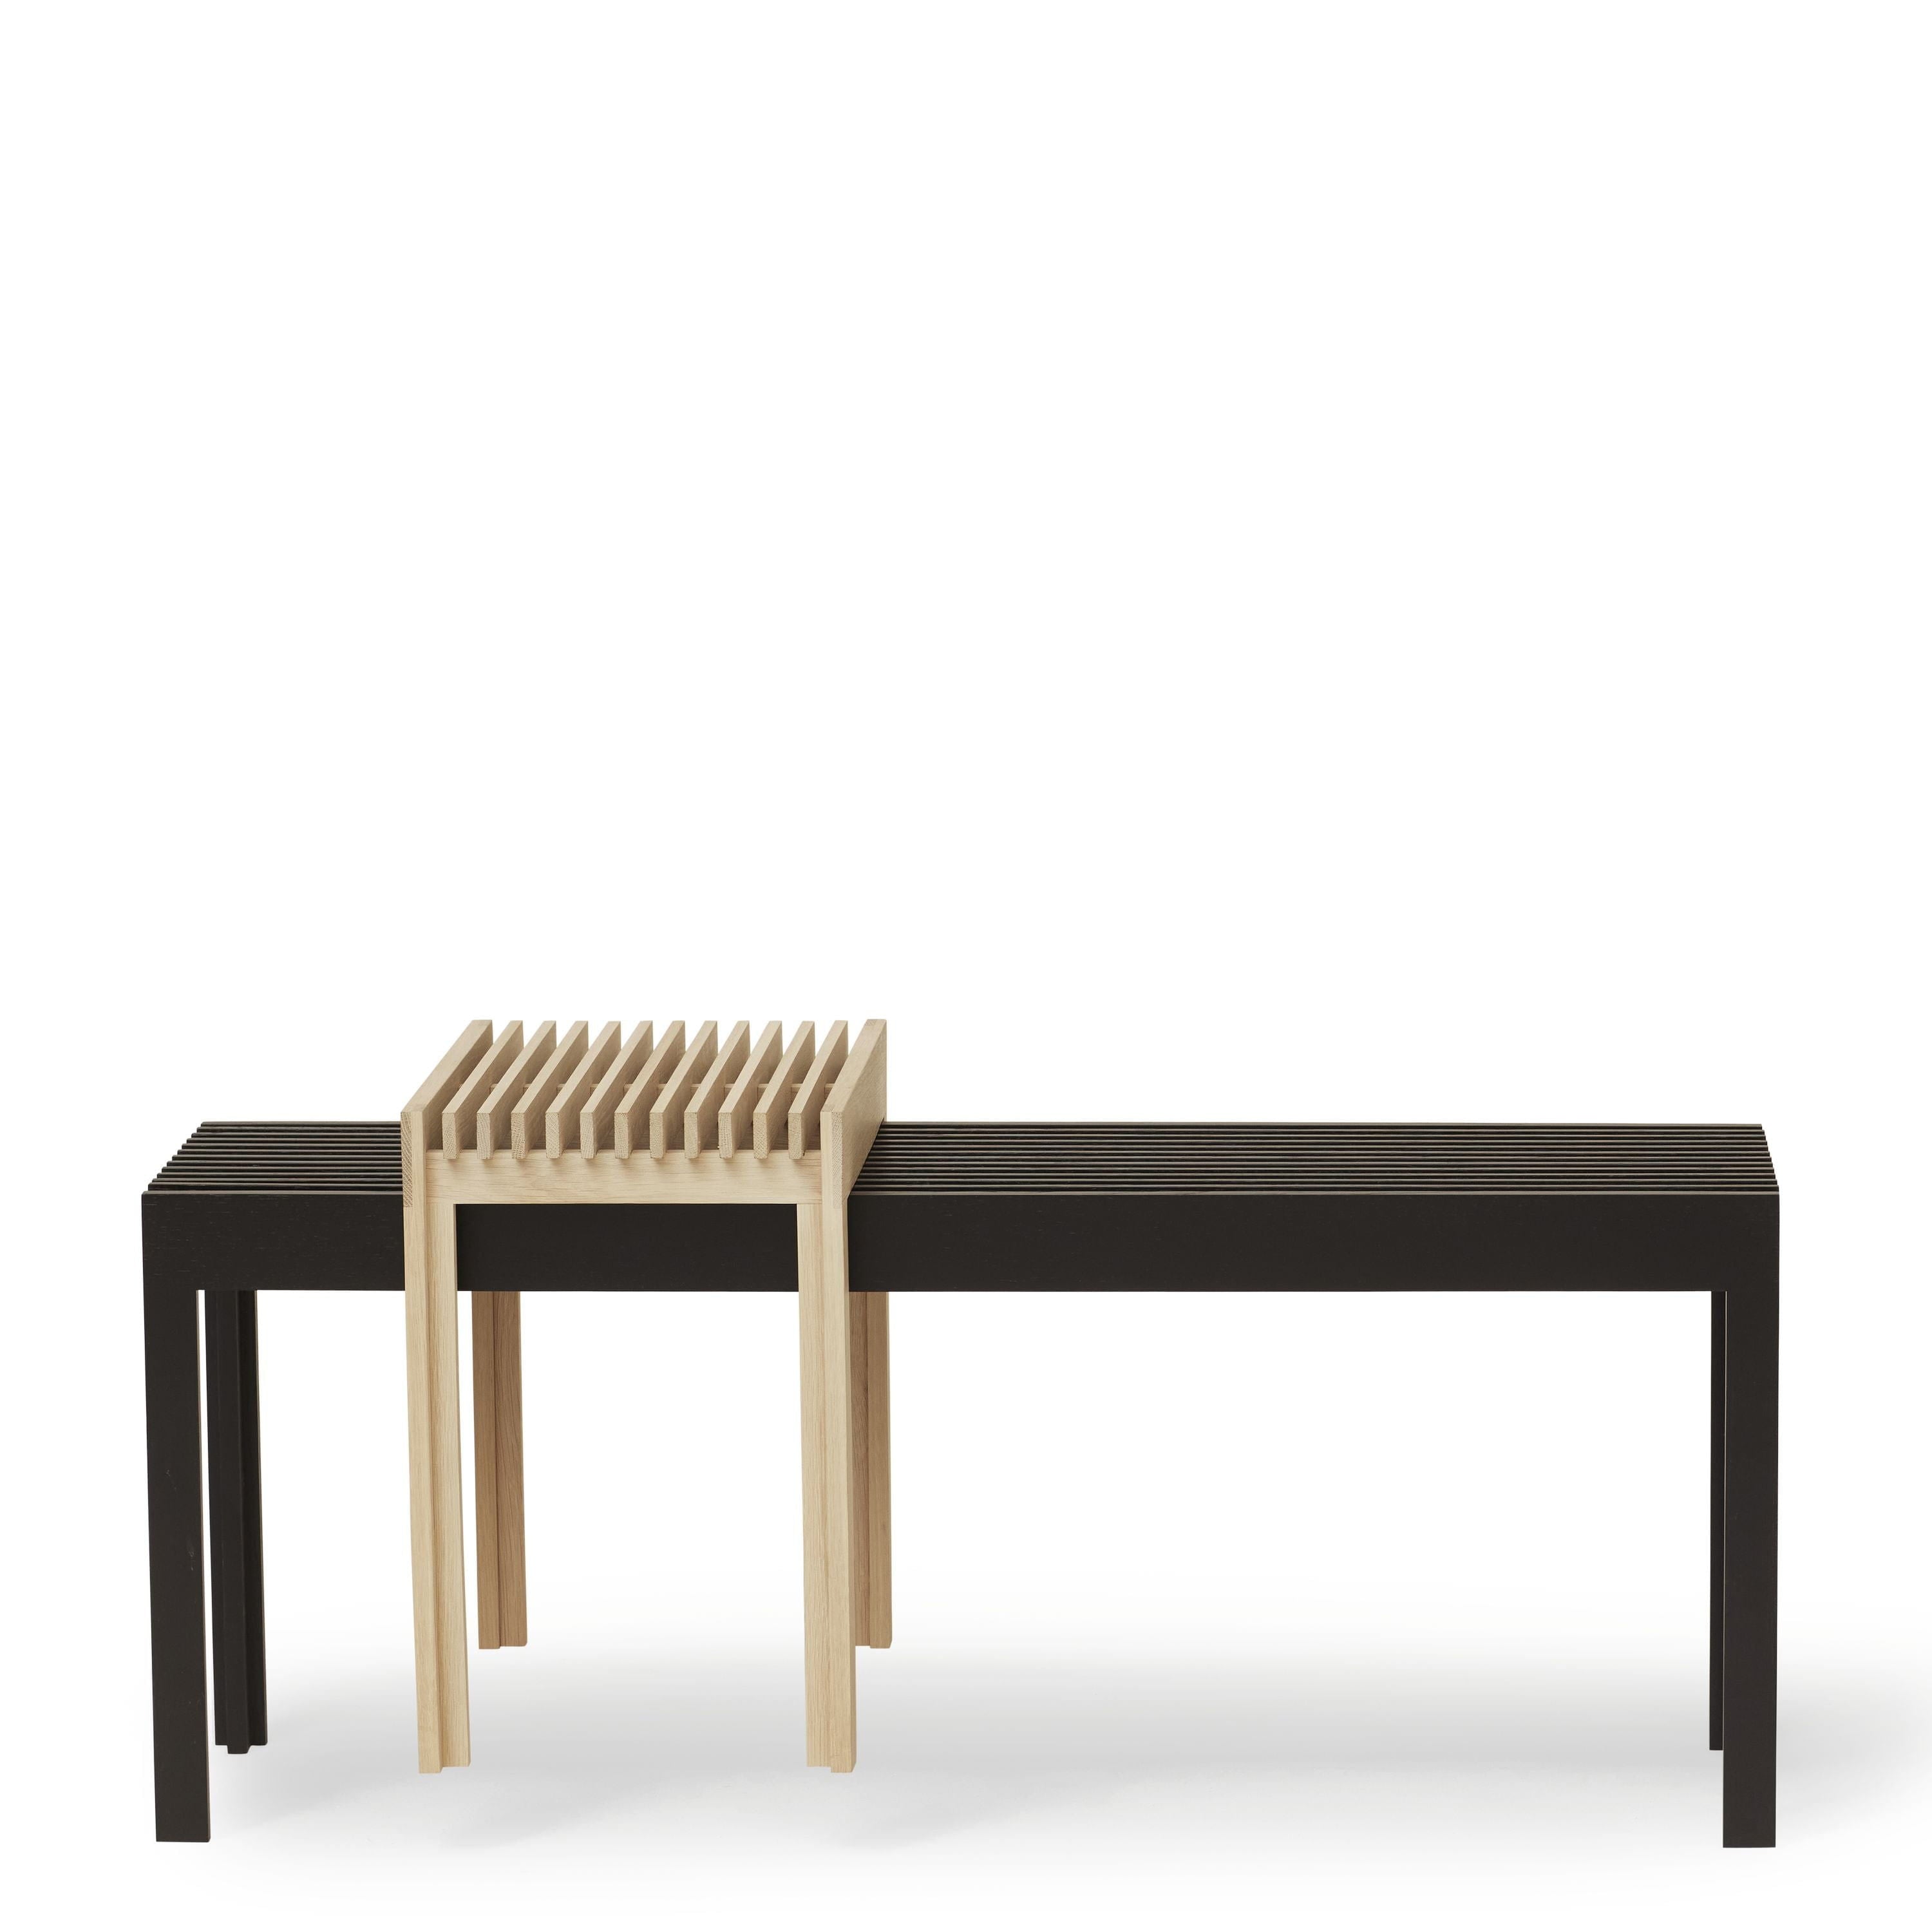 形式和完善轻便的长凳。黑色染色的橡木